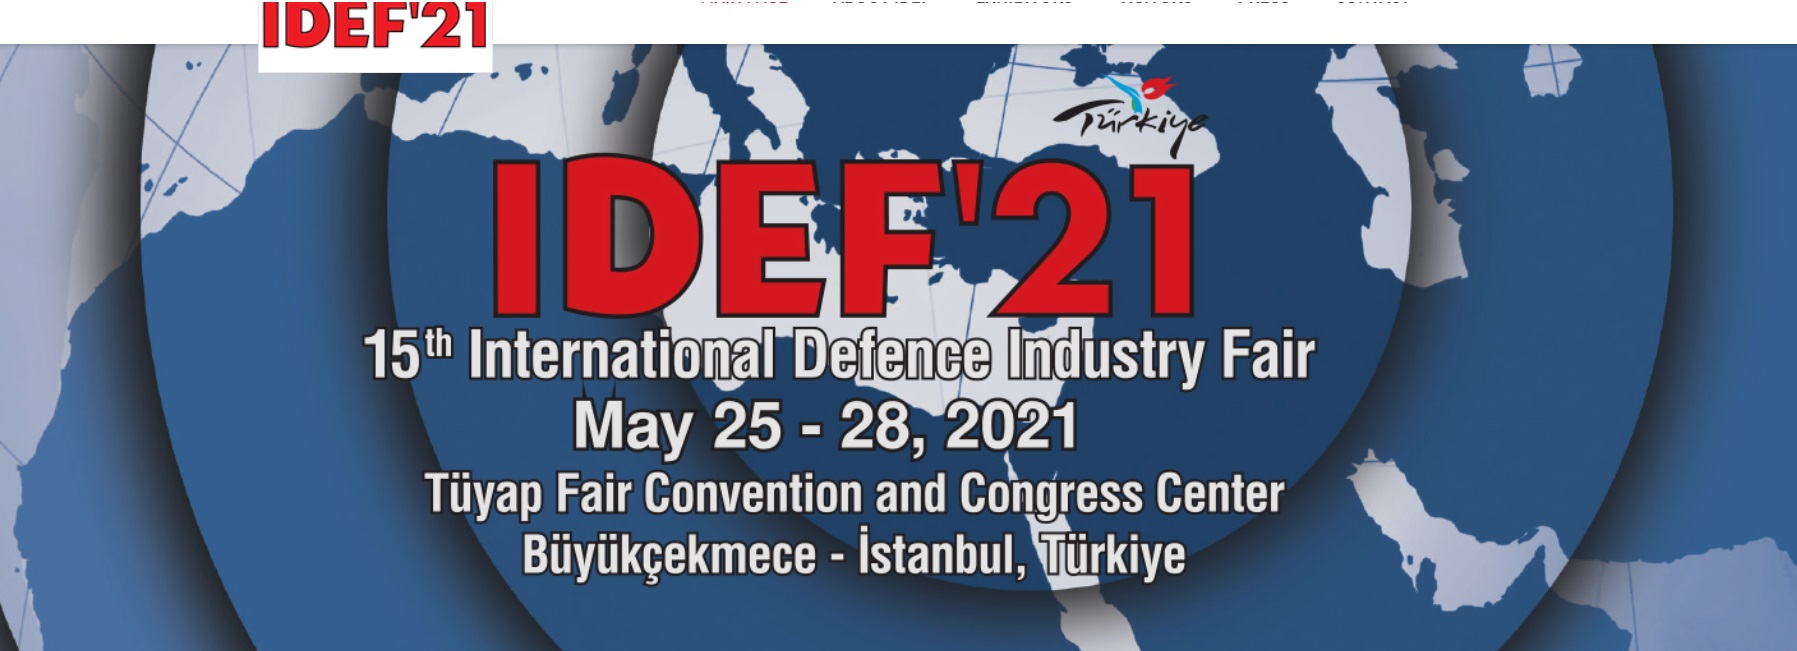 IDEF'21 пройдет 25-28 мая 2021 года